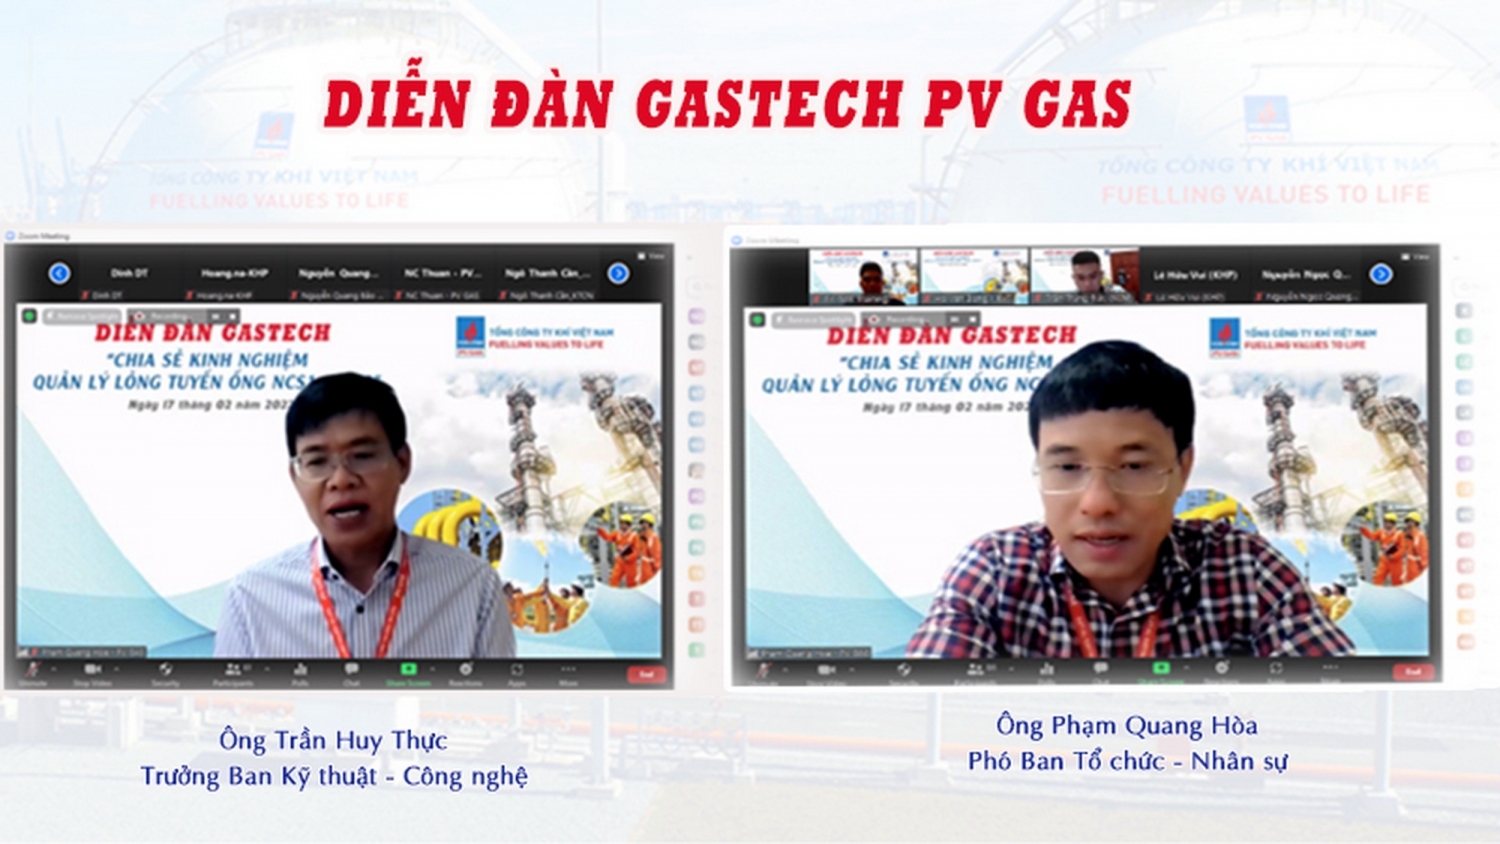 Khai mạc Diễn đàn PV GAS với nhiều nội dung thiết thực, đẩy mạnh “cuộc sống làm việc trực tuyến”